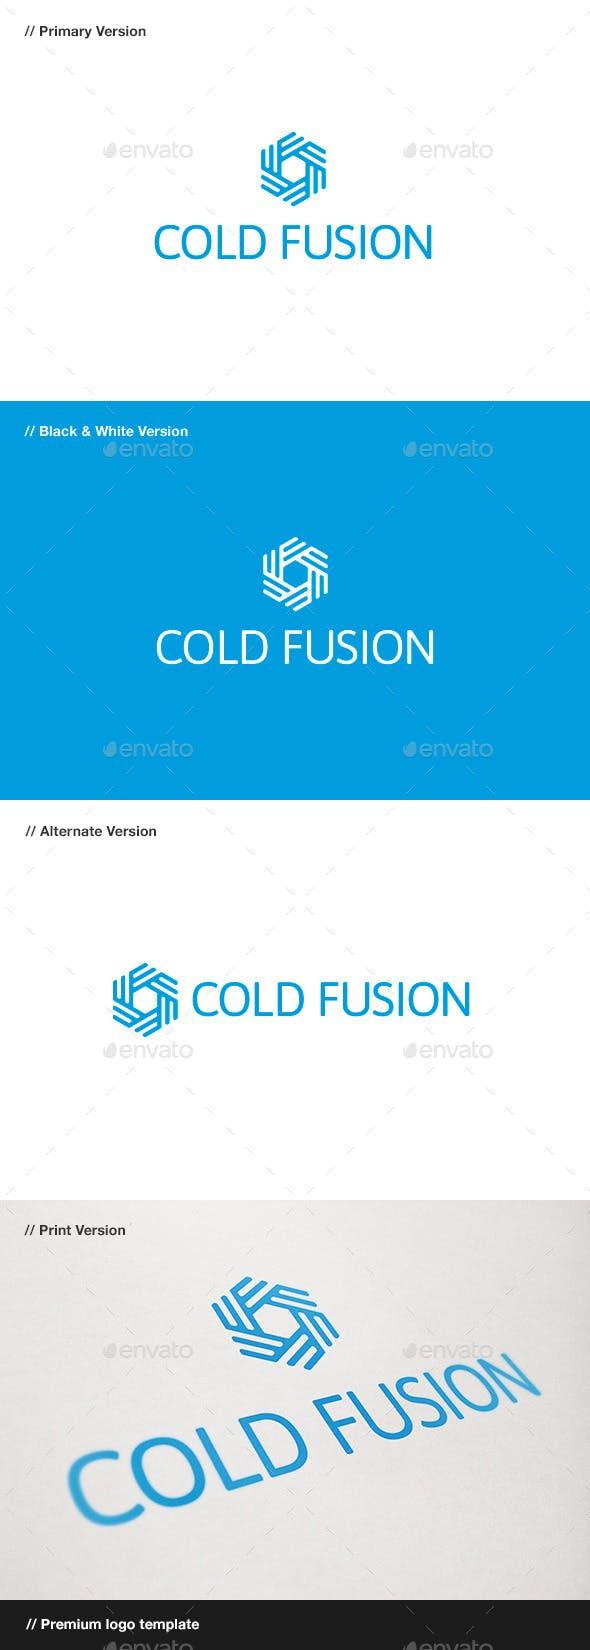 ColdFusion Logo - Cold Fusion - Symbol Logo by domibit | GraphicRiver